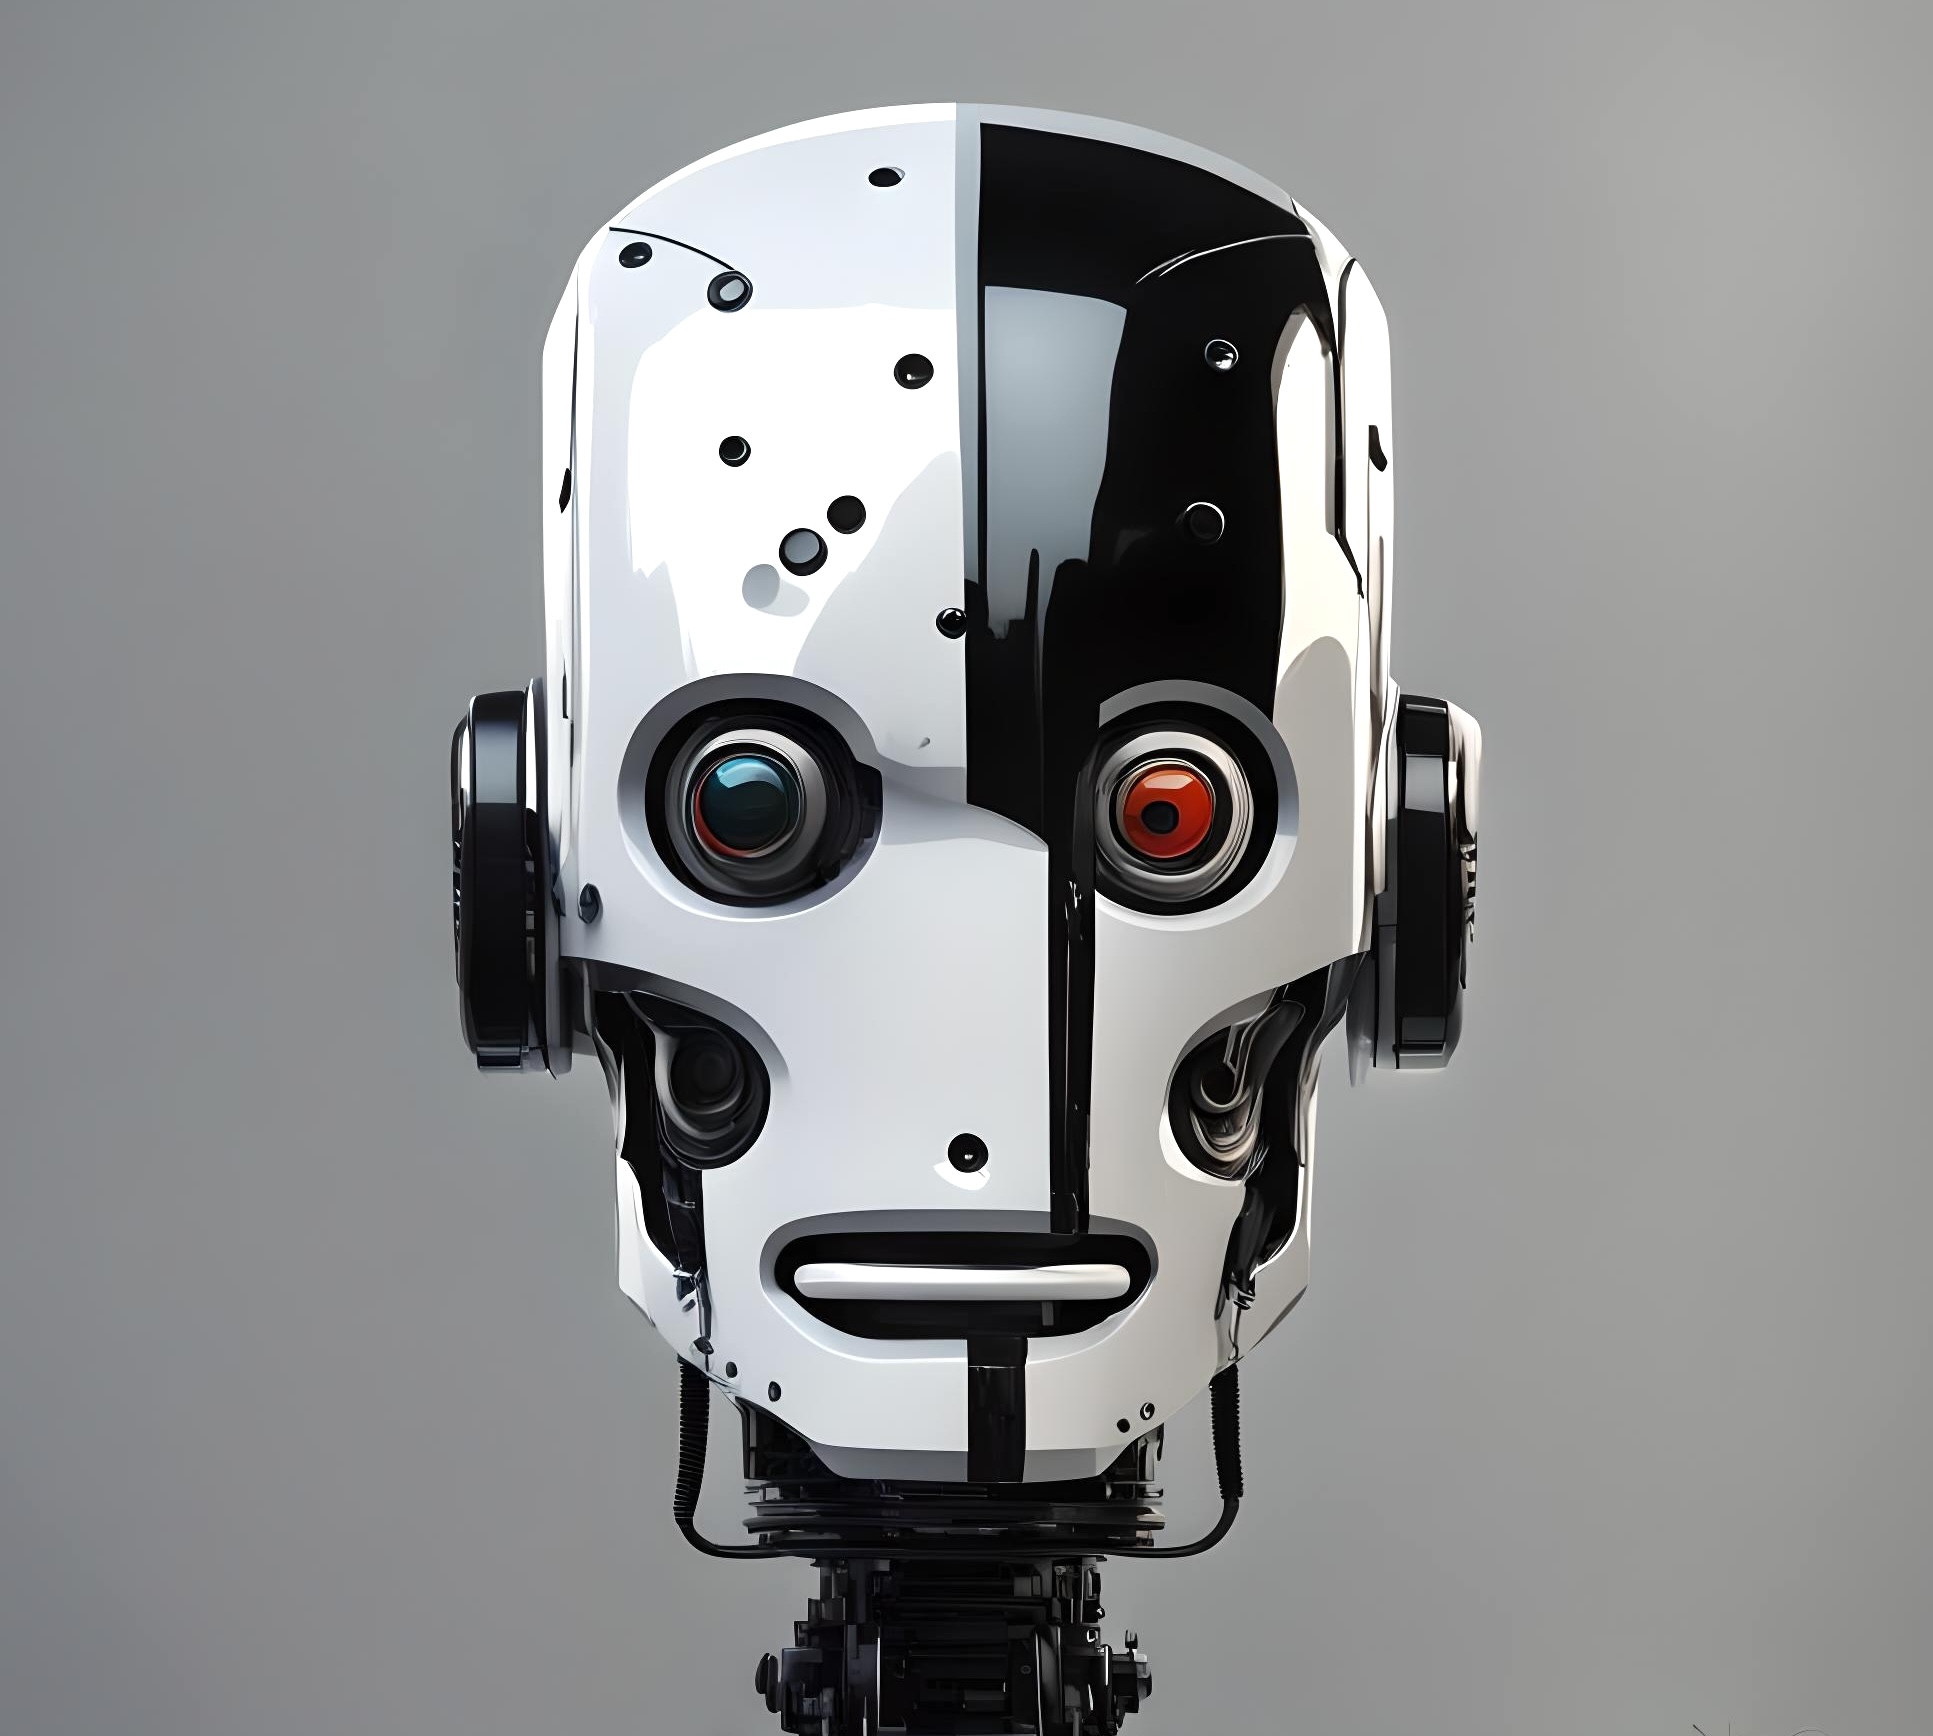 talking robot